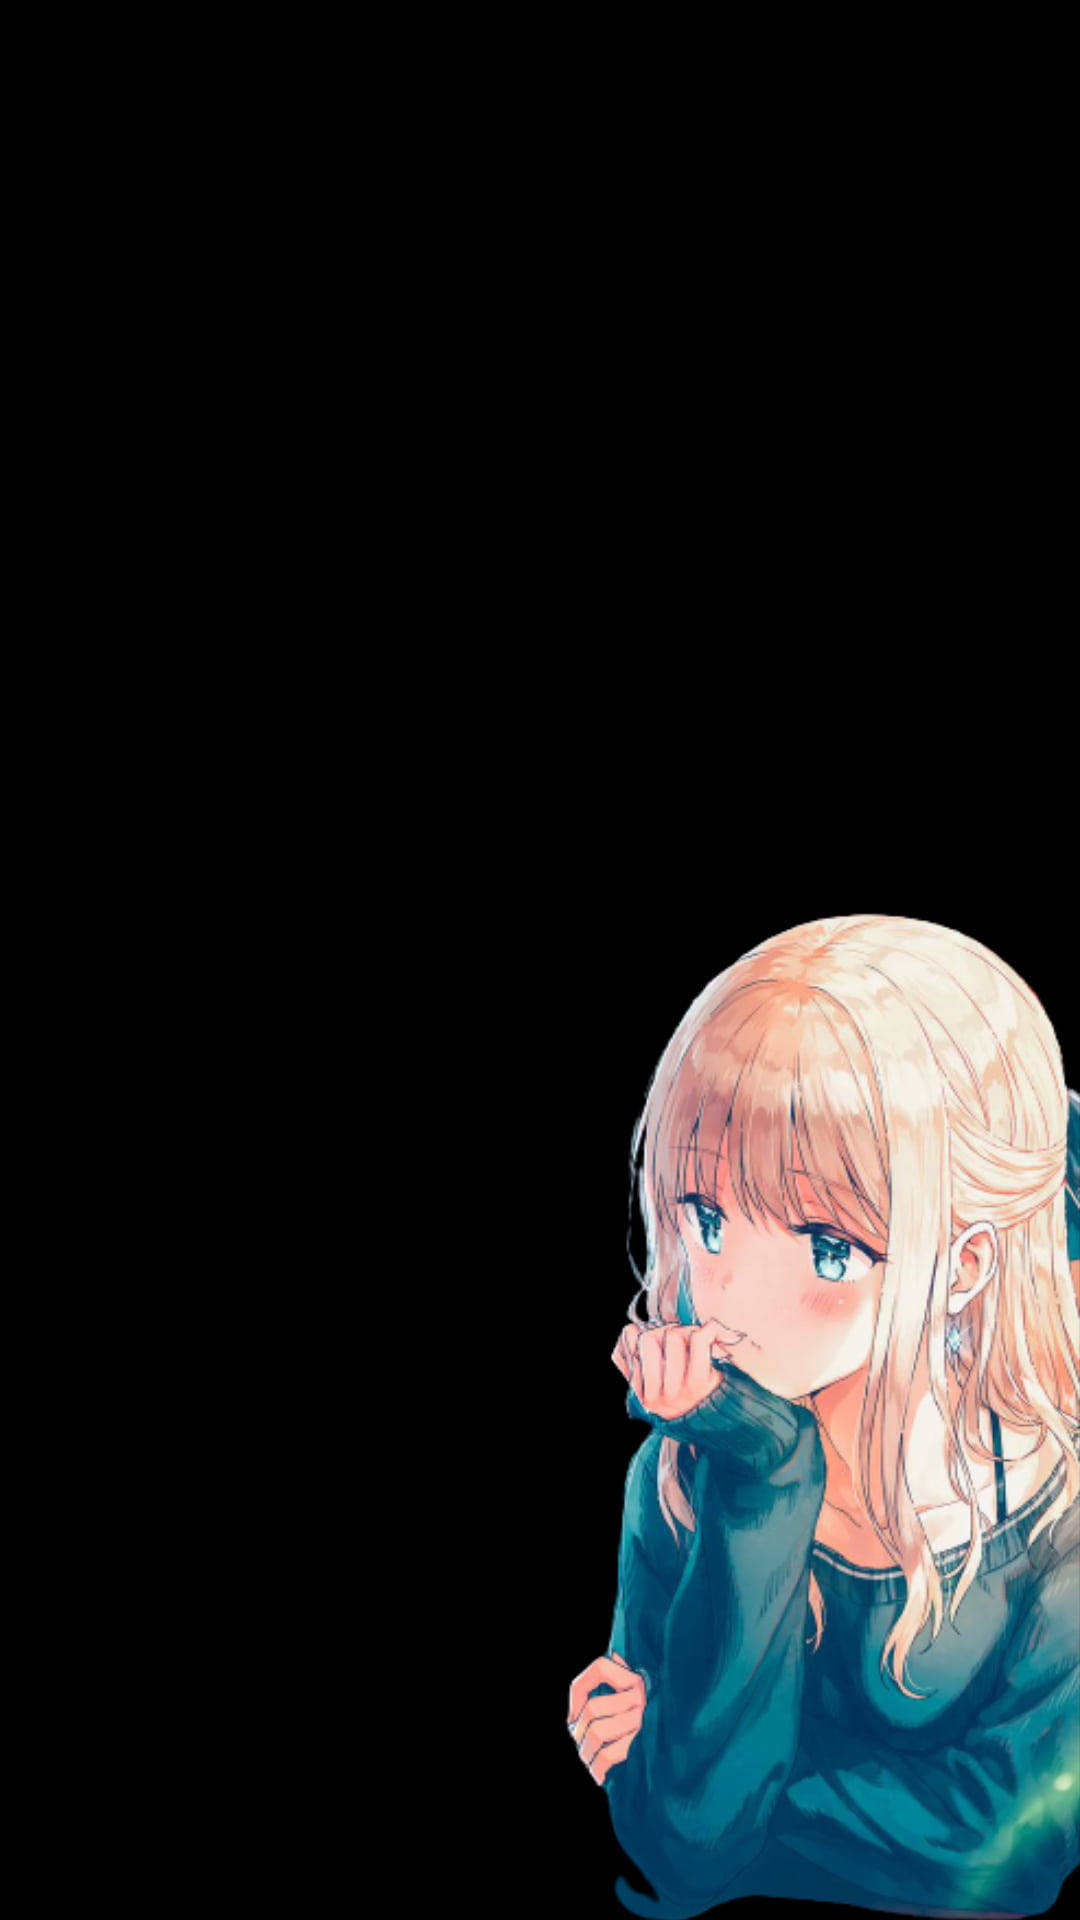 Aesthetic Sad Anime Girl Black Background Background